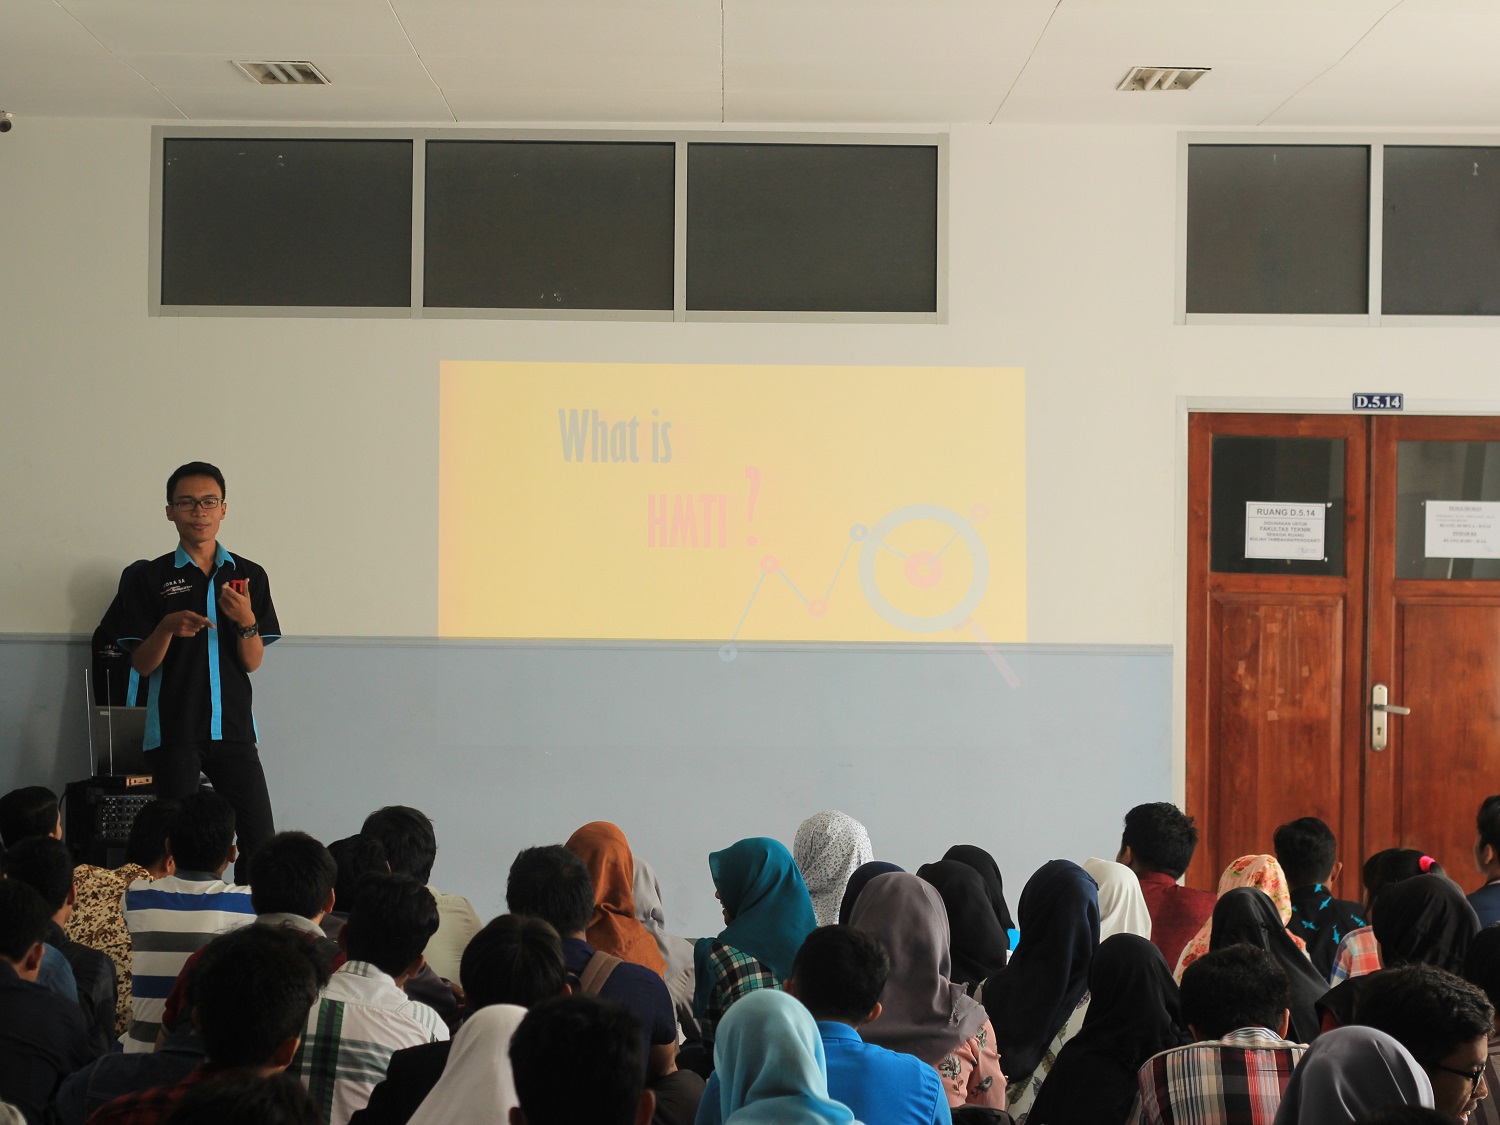 Presentasi pengenalan HMTI oleh Ketua Umum, Indra Sukma Ananta